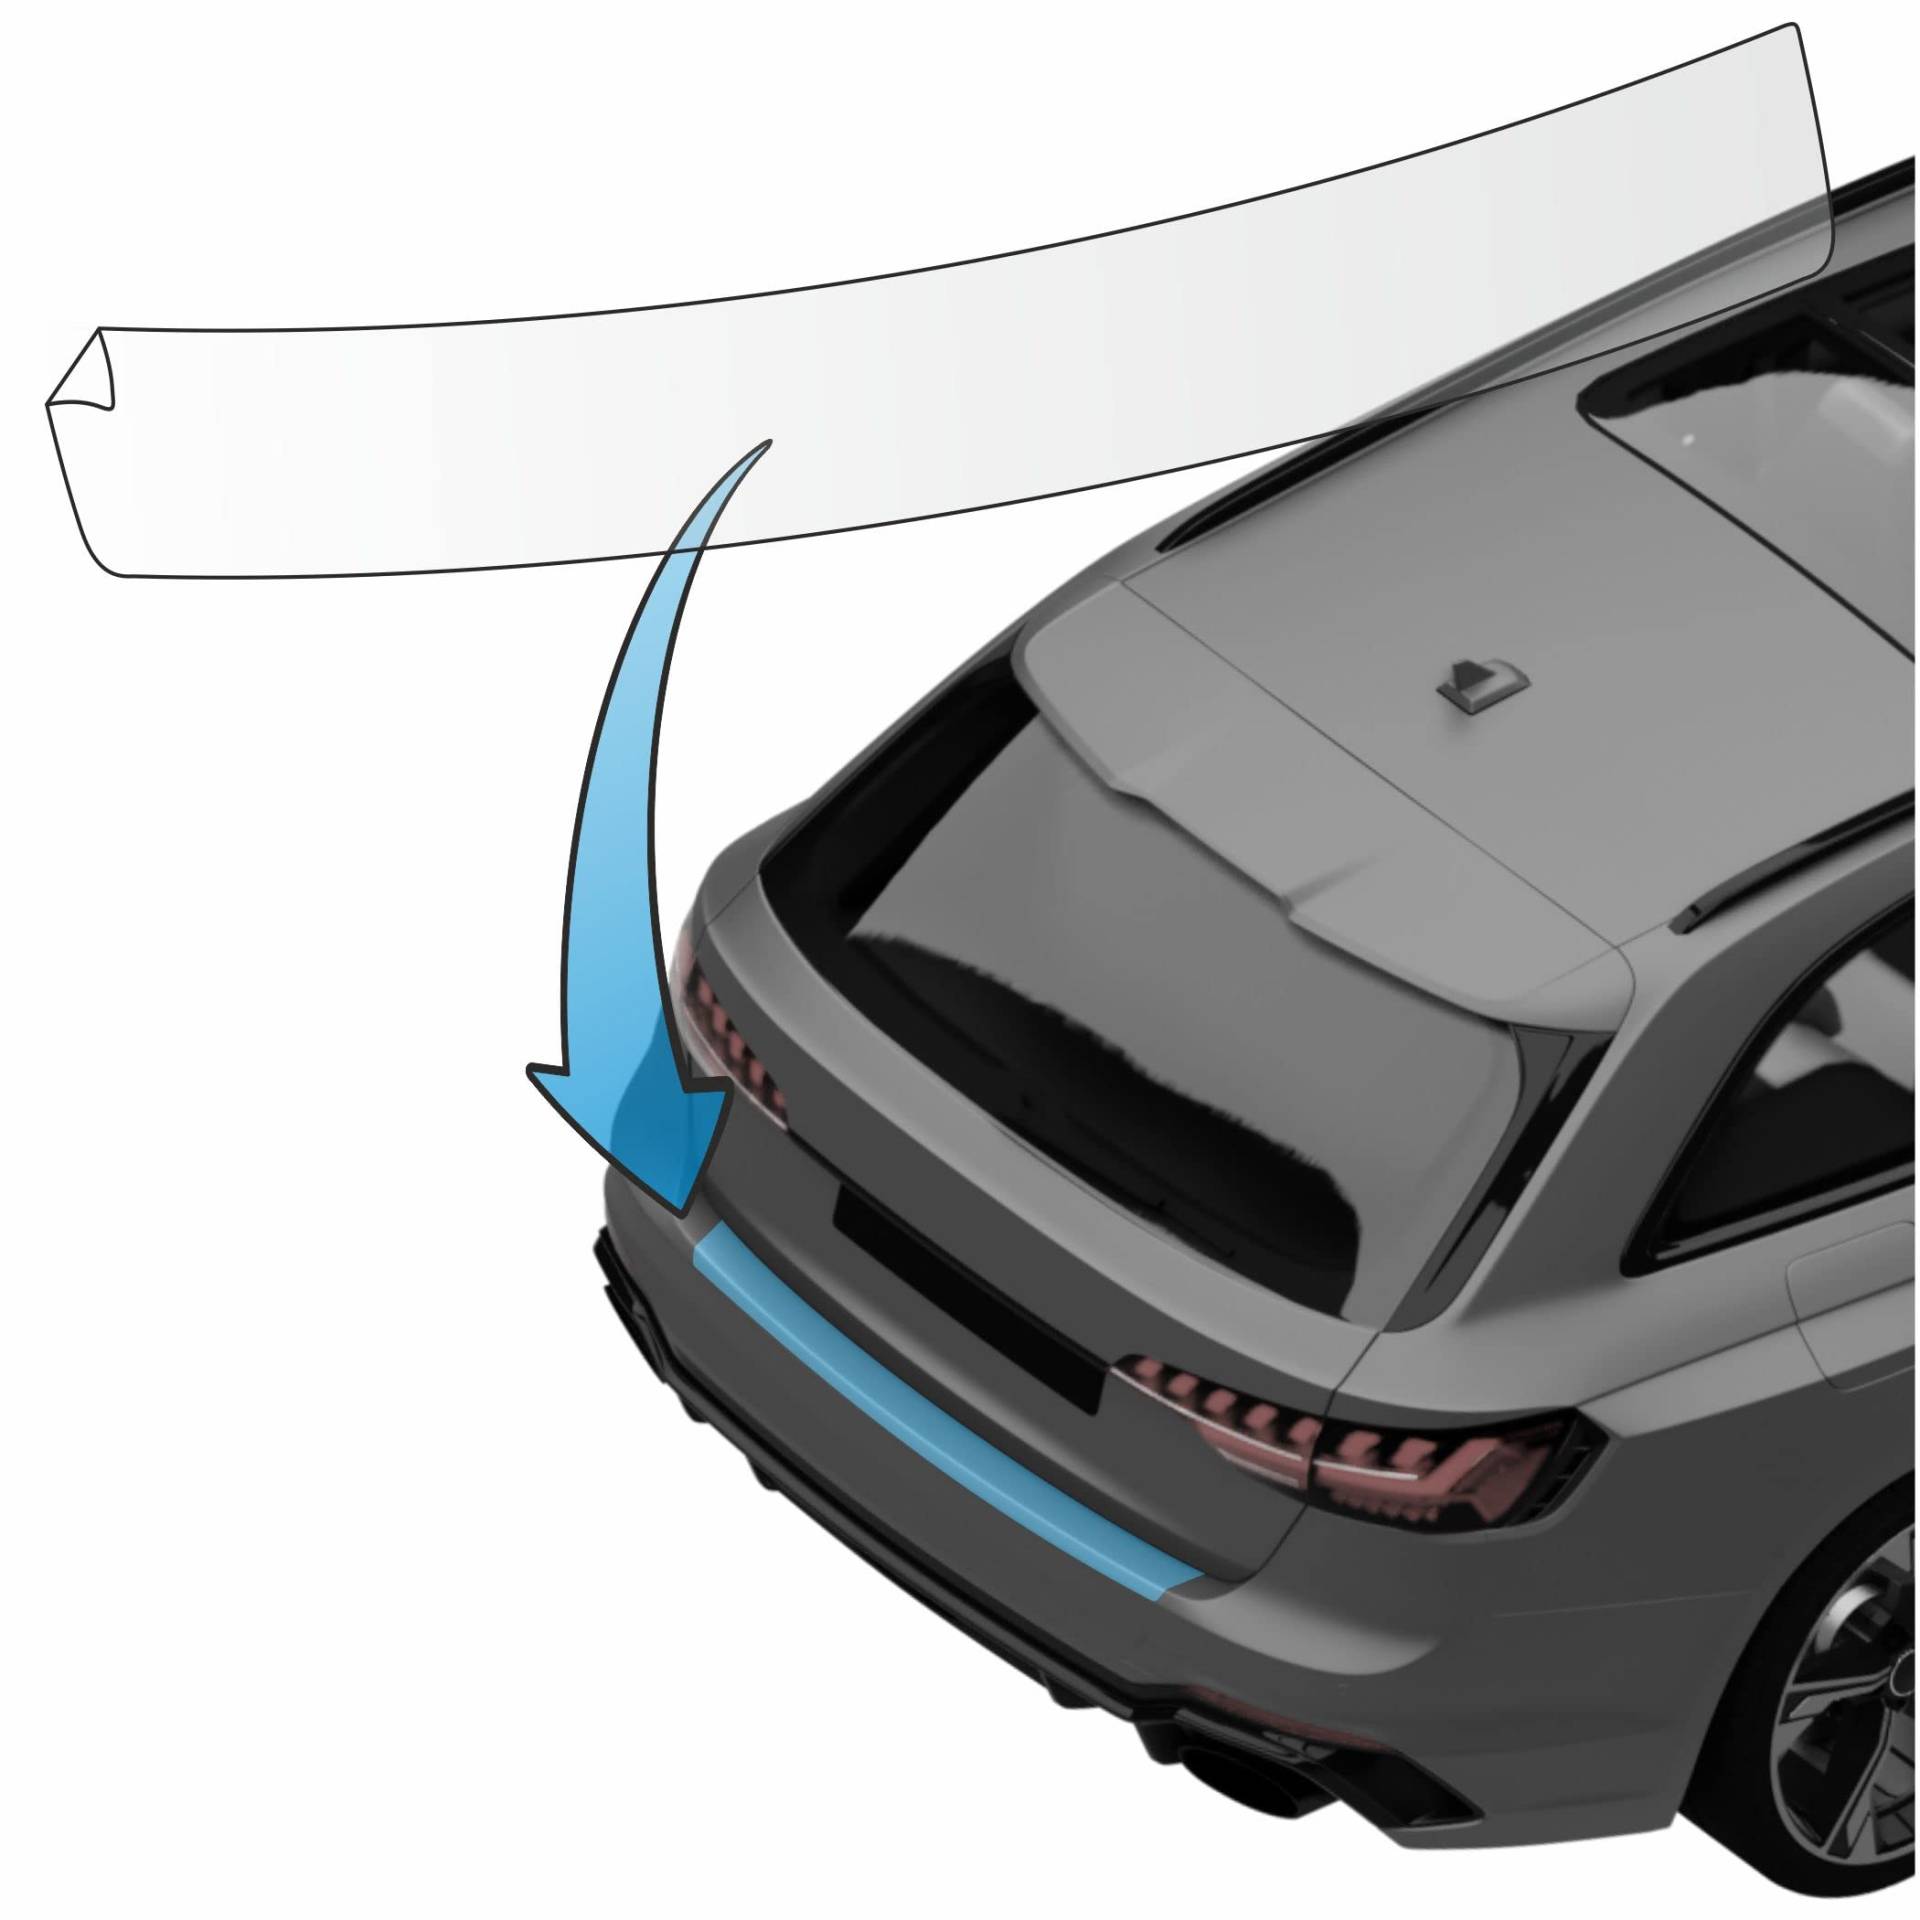 MisterLacky – Lackschutzfolie mit Rakel als Ladekantenschutz Folie passend für BMW X4 (II) Typ G02, ab BJ 03/2018 in transparent (240µm) von Lackschutzshop